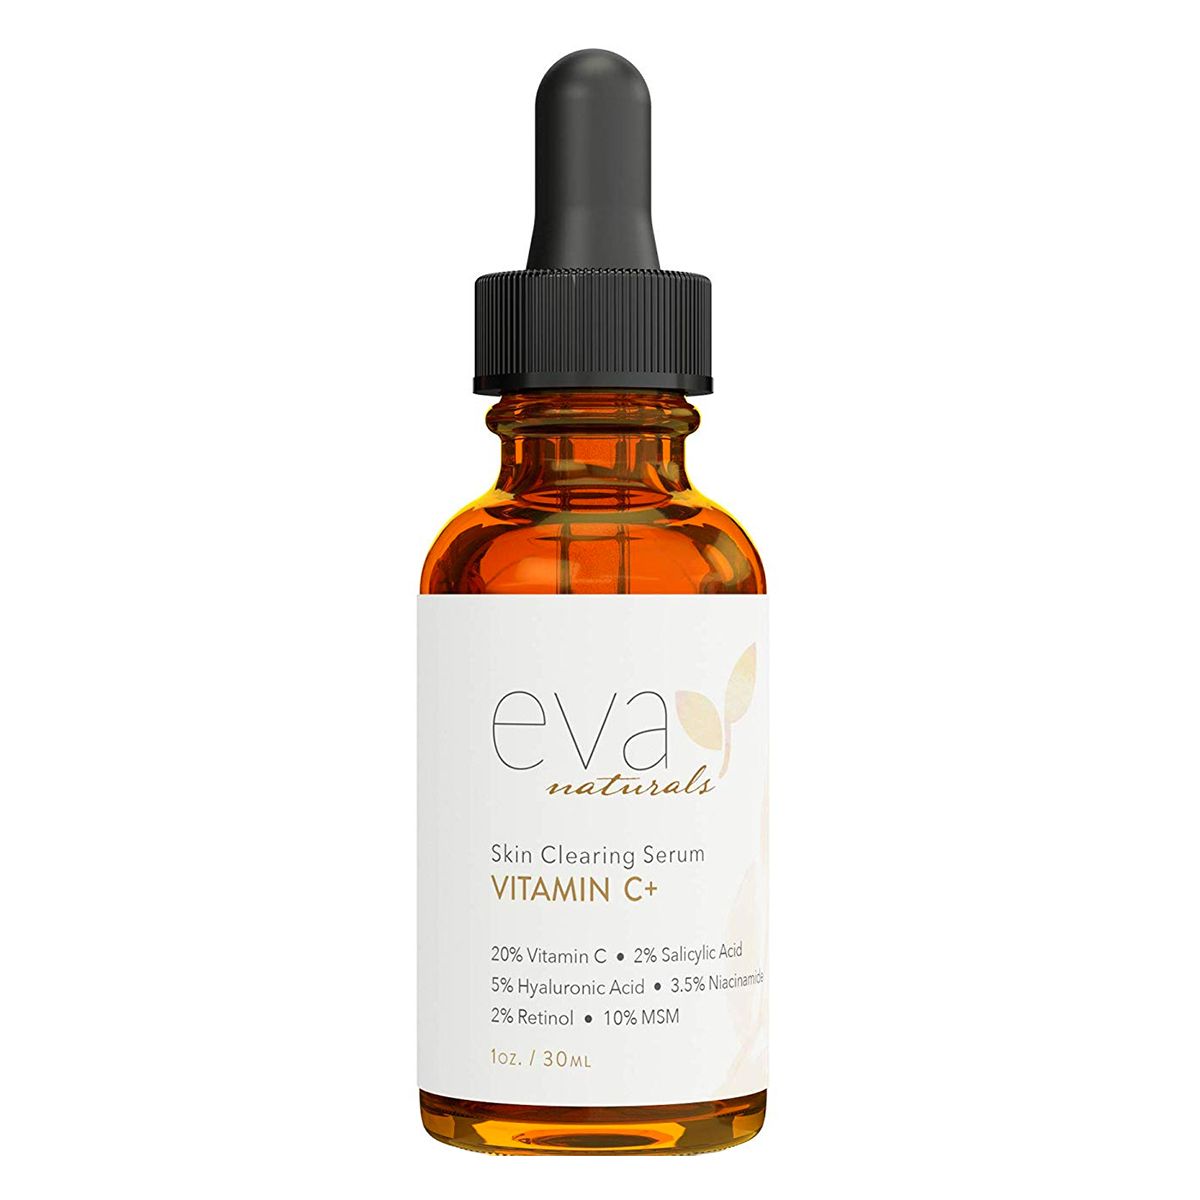 Parhaat ryppyjen ikääntymistä estävät tuotteet: Eva Naturals ihoa puhdistava seerumi, jossa on C-vitamiinia, hyaluronihappoa, retinolia ja niasiiniamidia